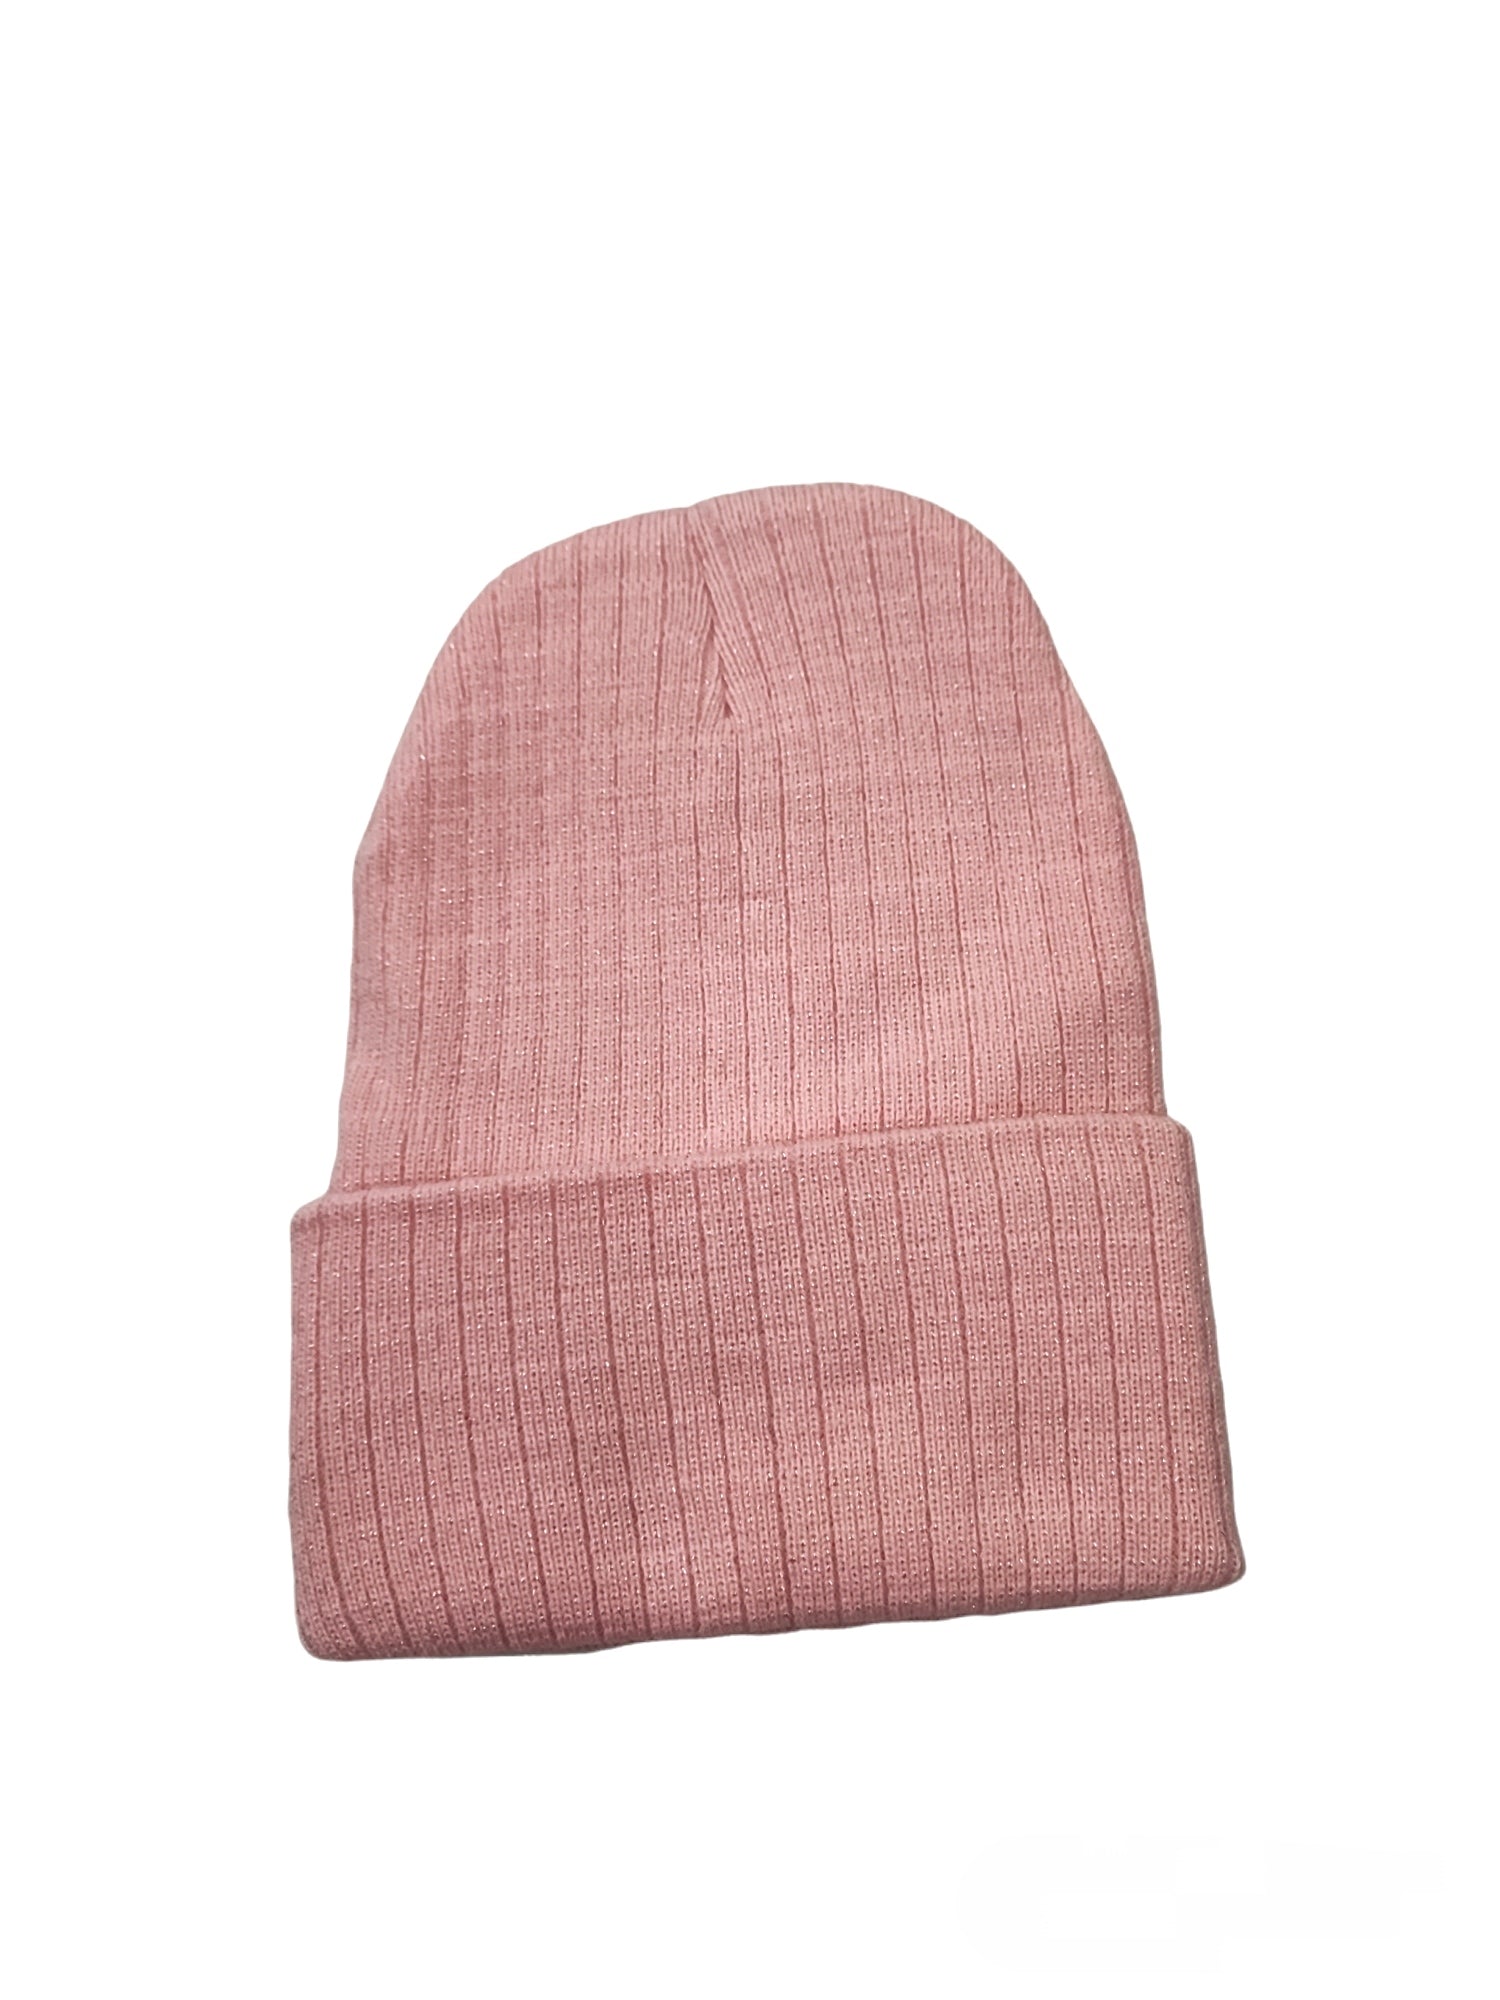 bonnet tricoté argent simple   (x12)